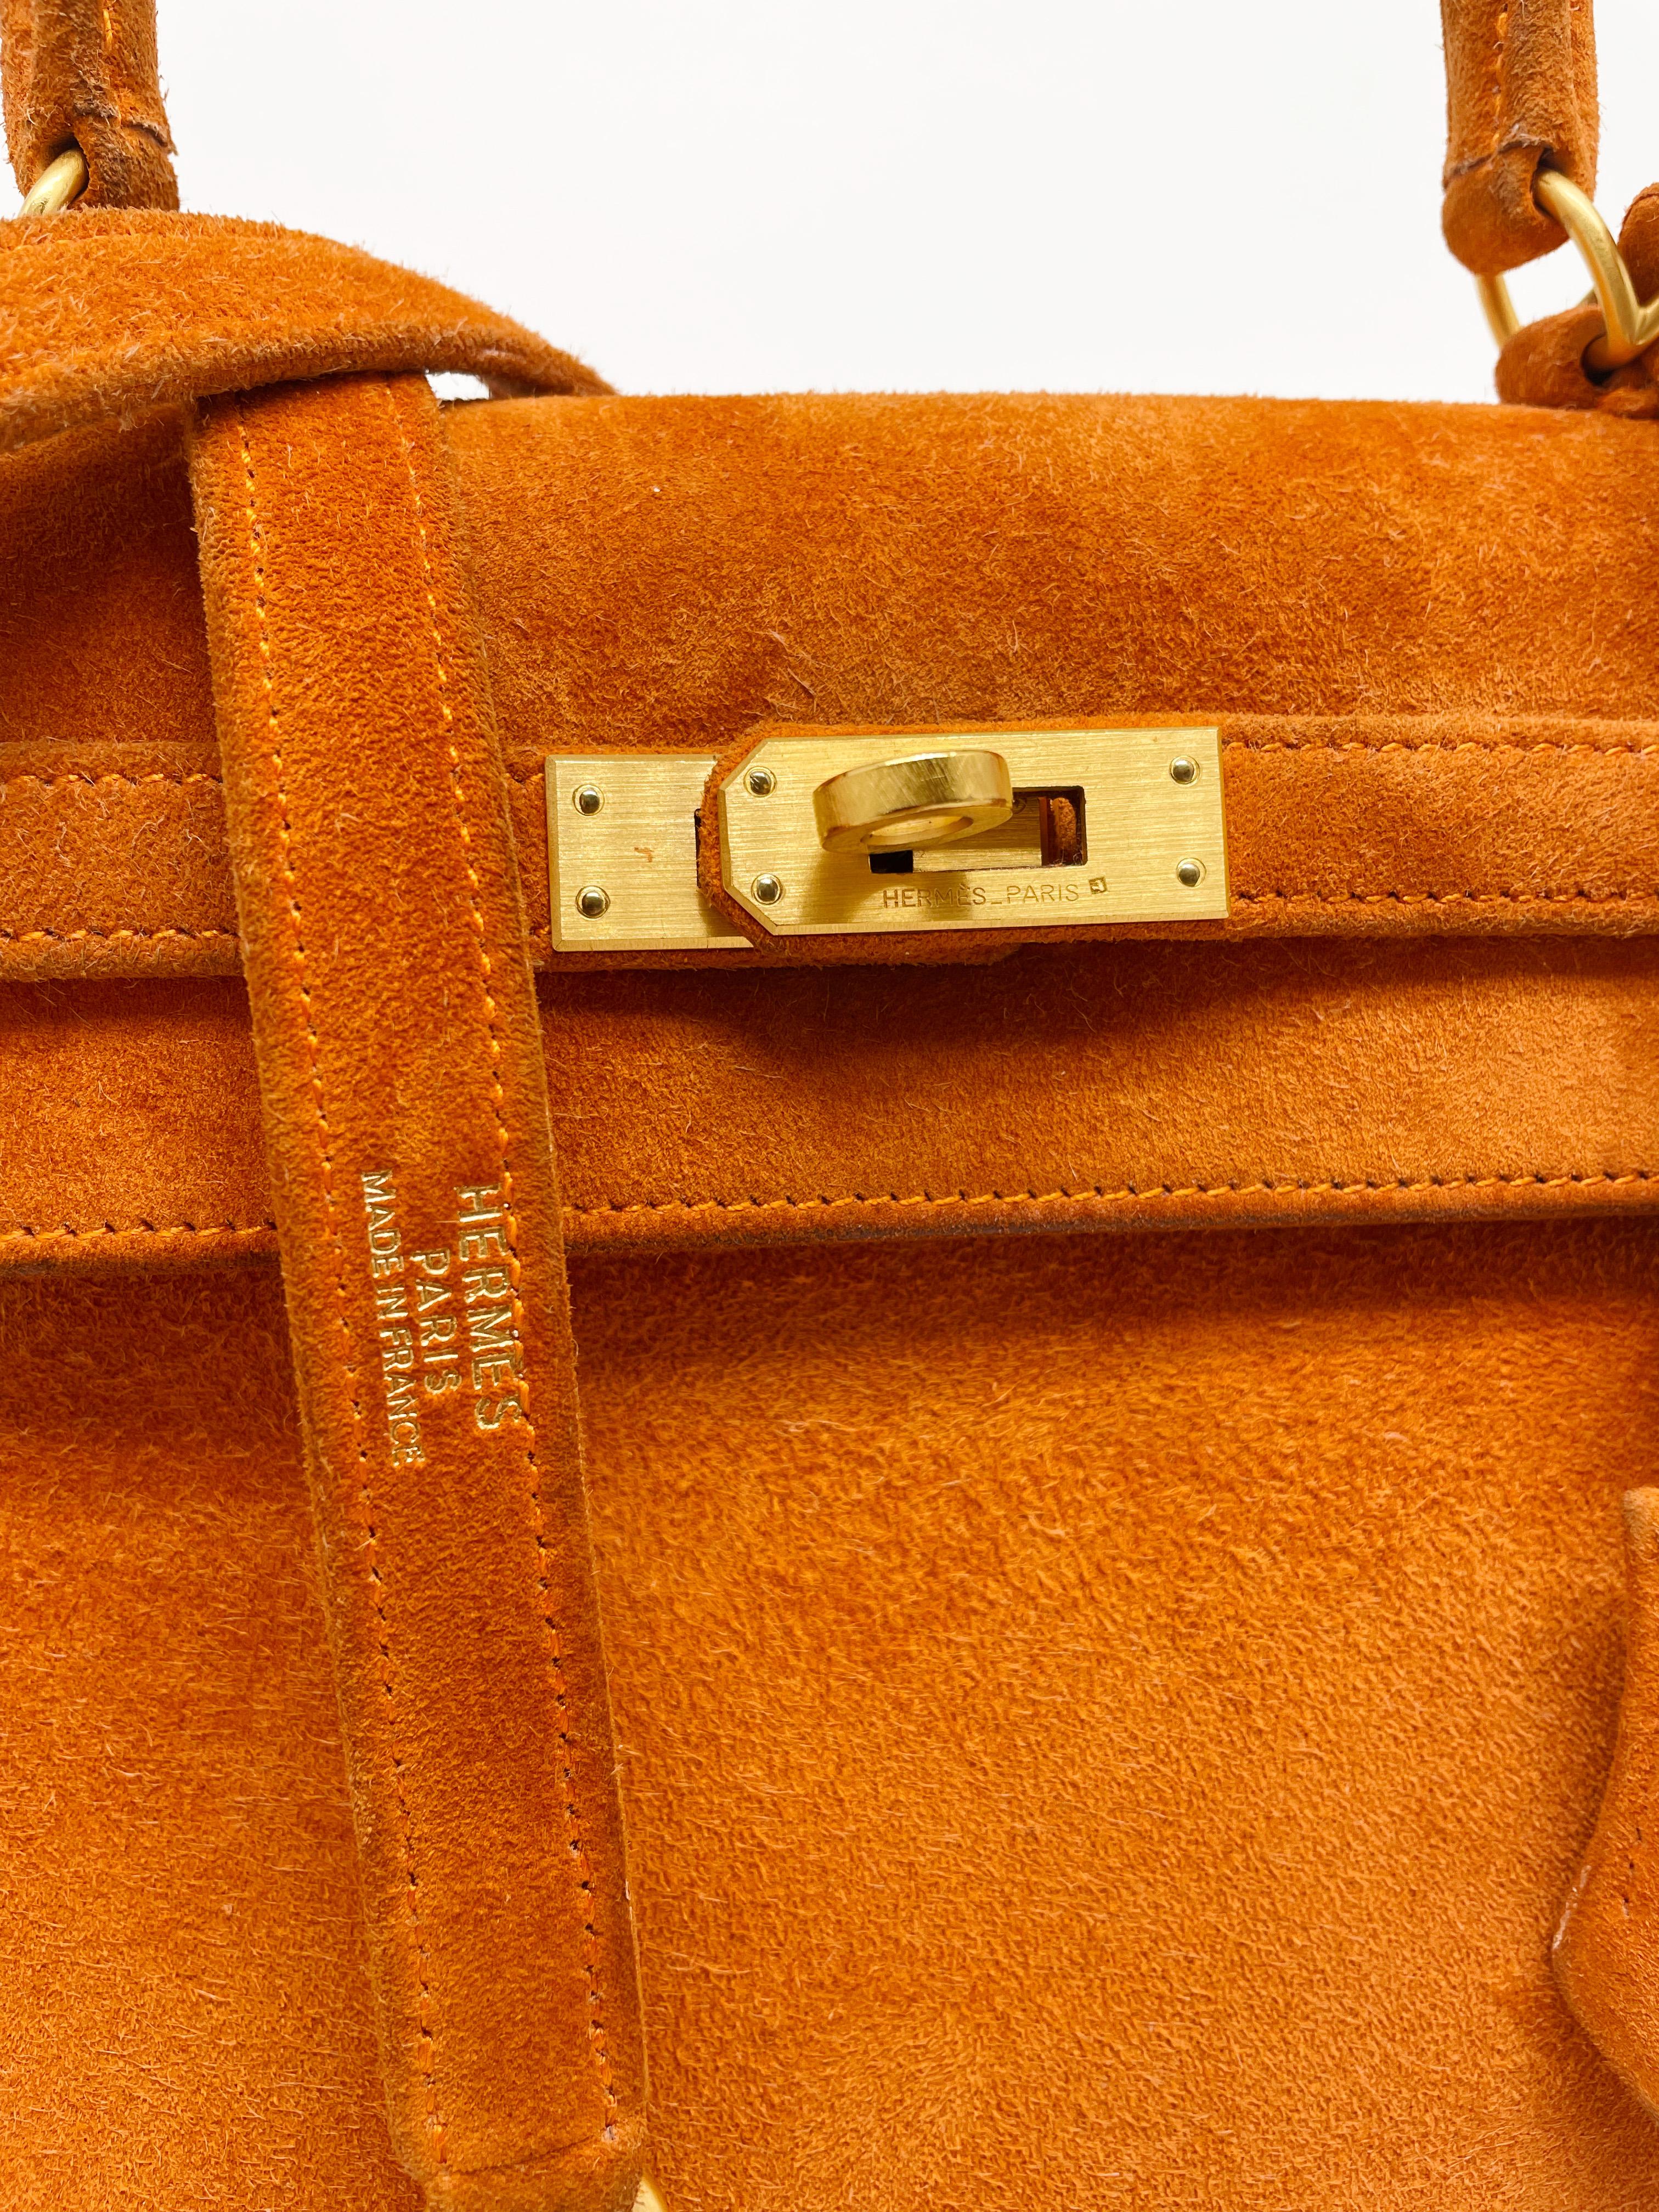 Exceptionnel sac à main Hermès Kelly 25 cm en veau Doblis et quincaillerie raffinée en or brossé, anse simple en daim orange, anse simple amovible en cuir daim orange permettant de le porter à la main ou à l'épaule.

Fermeture à rabat.
Doublure